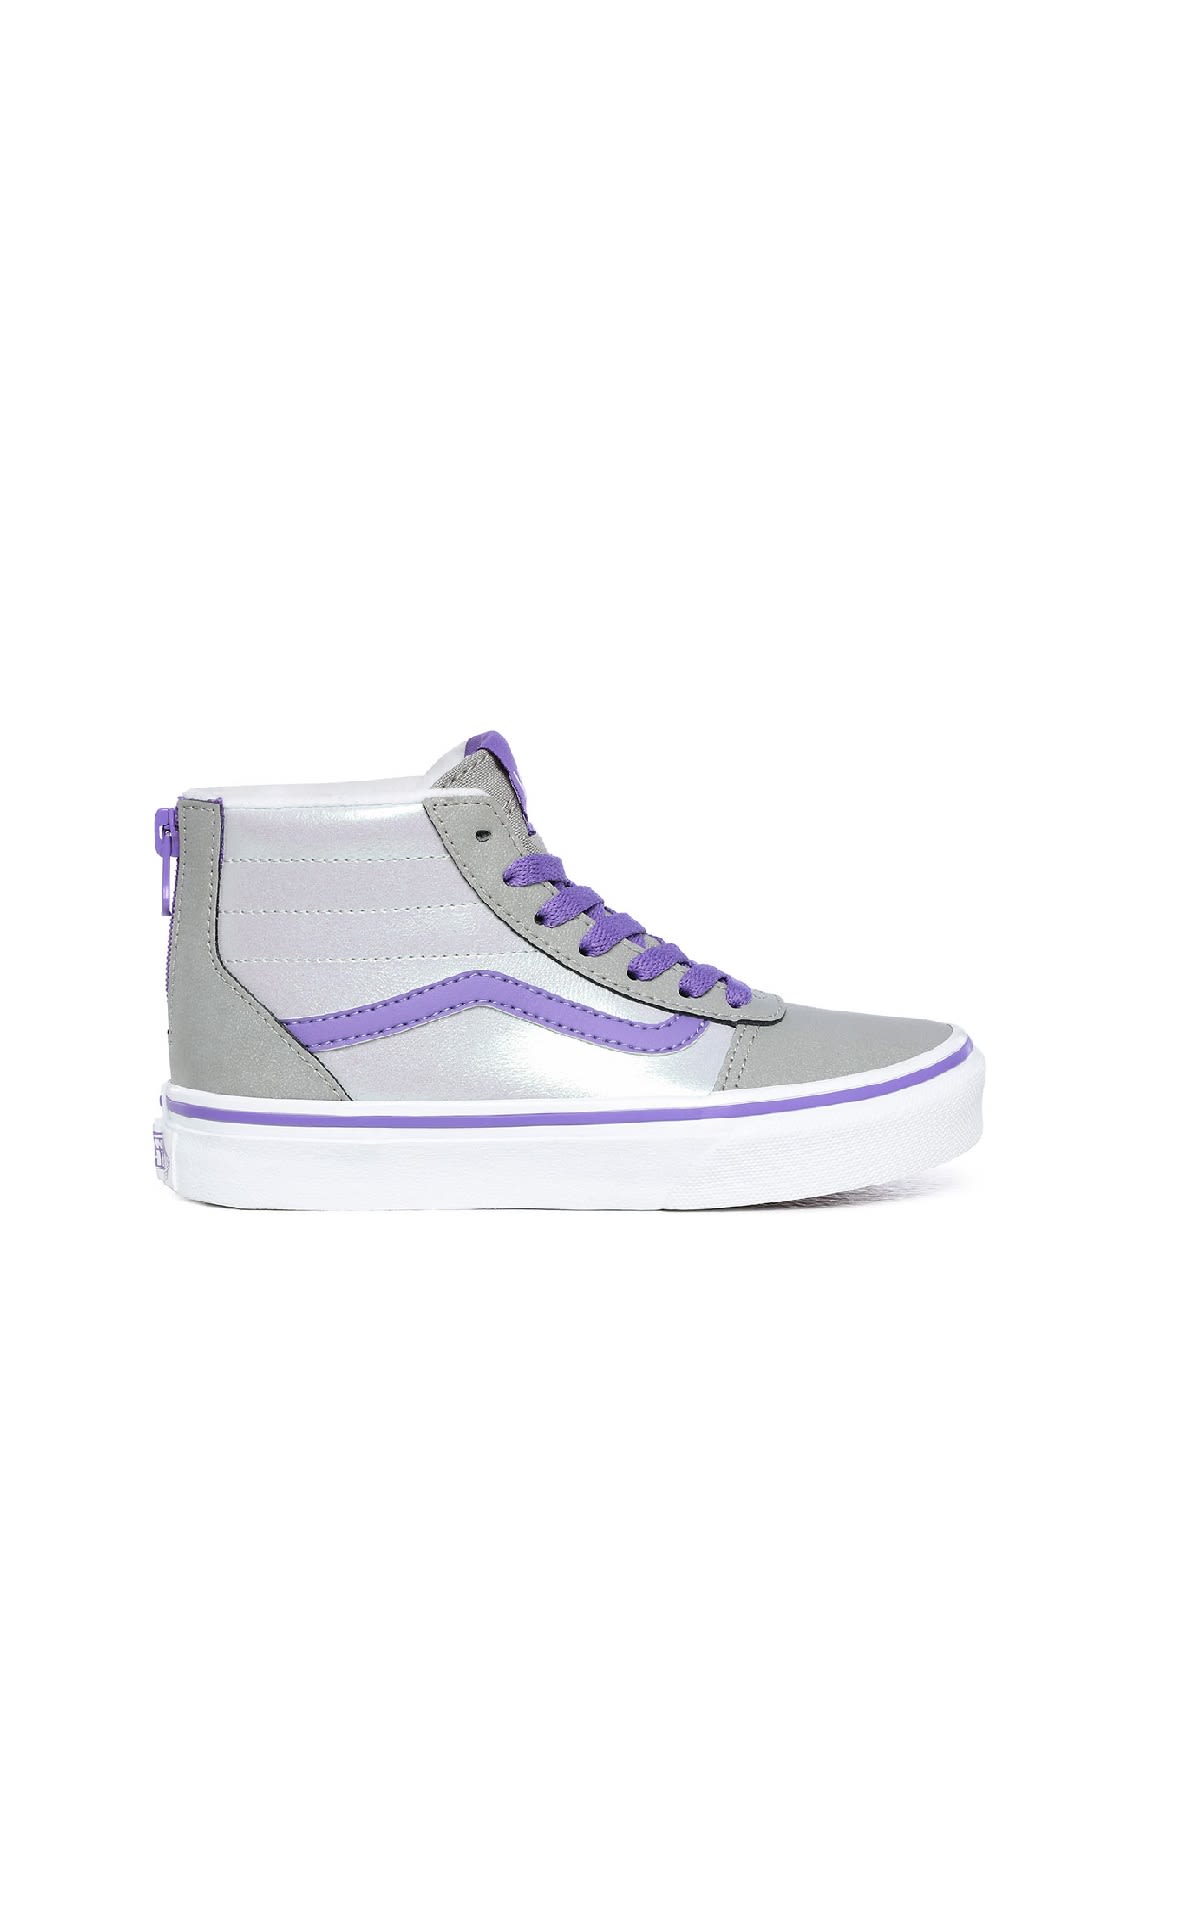 Sneakers blancas, grises y lilas medio tobillo Vsans